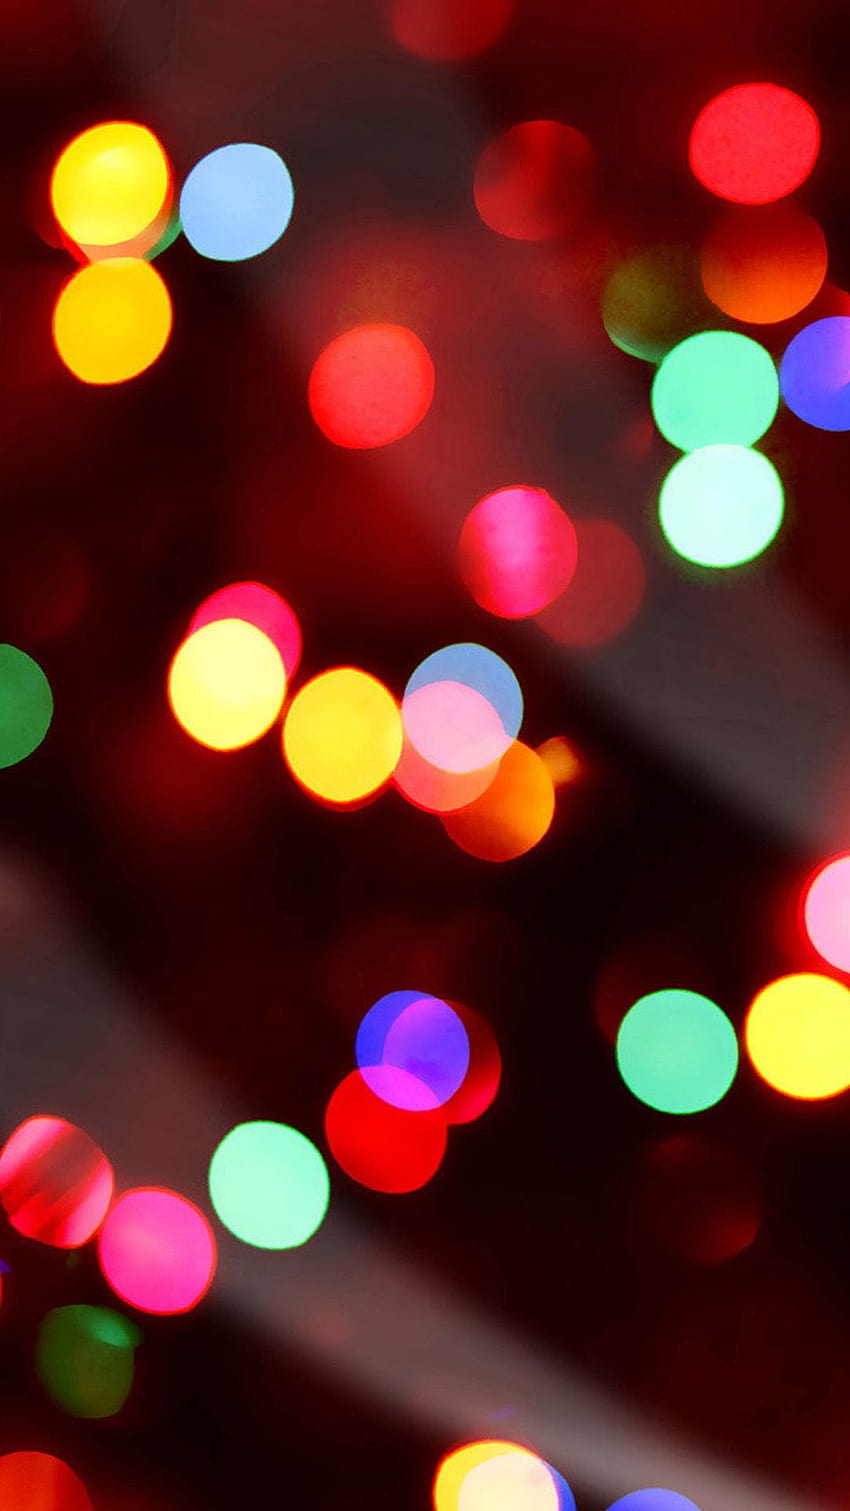 Red Christmas Lights on Dog, colored christmas lights HD phone wallpaper